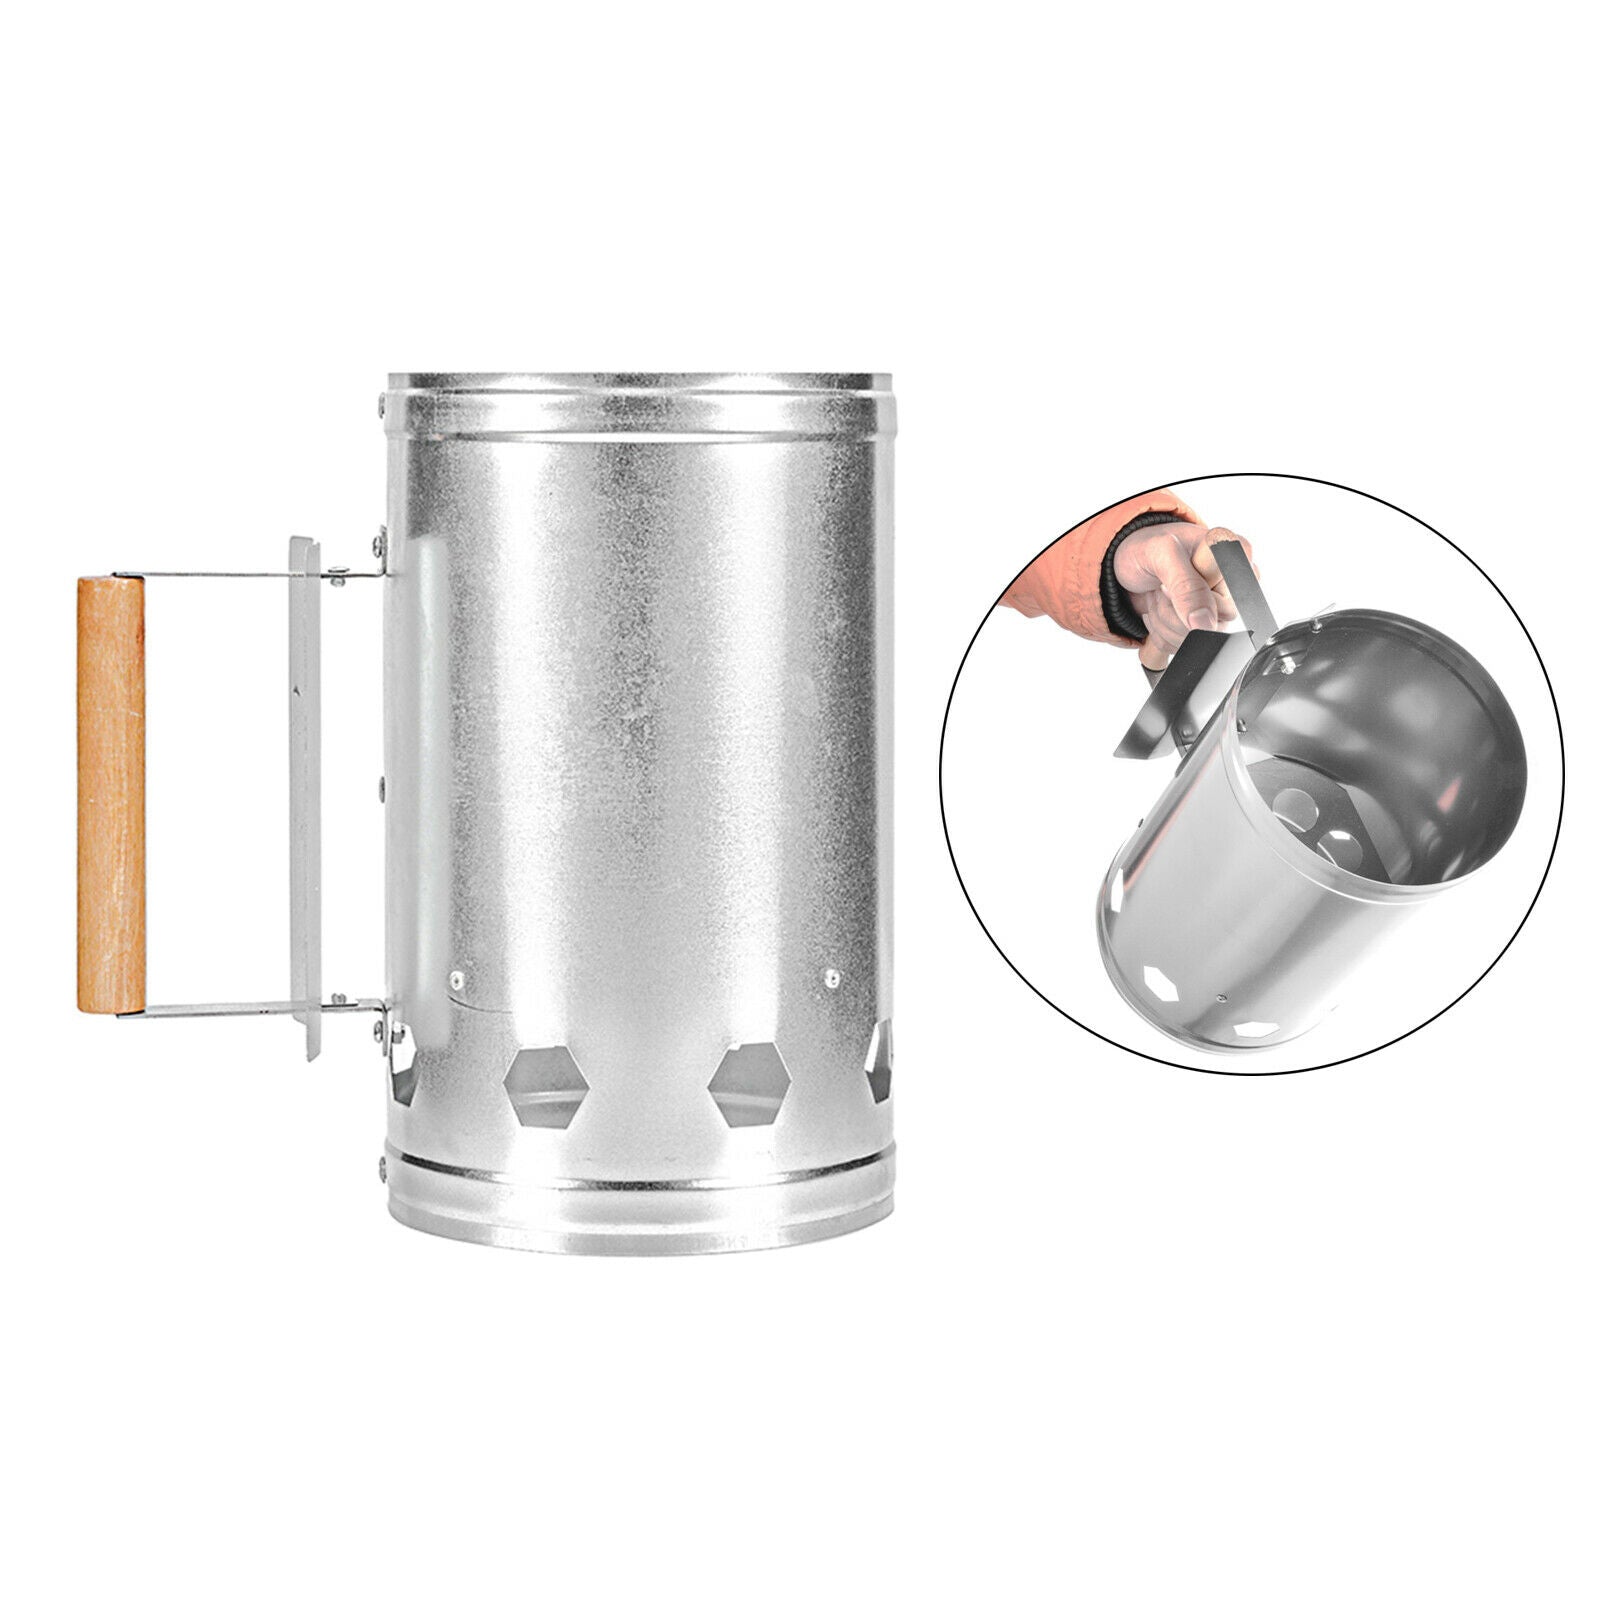 Chimney Starter BBQ Fire Lighter Burner Barrel Ignition with Handle Outdoor